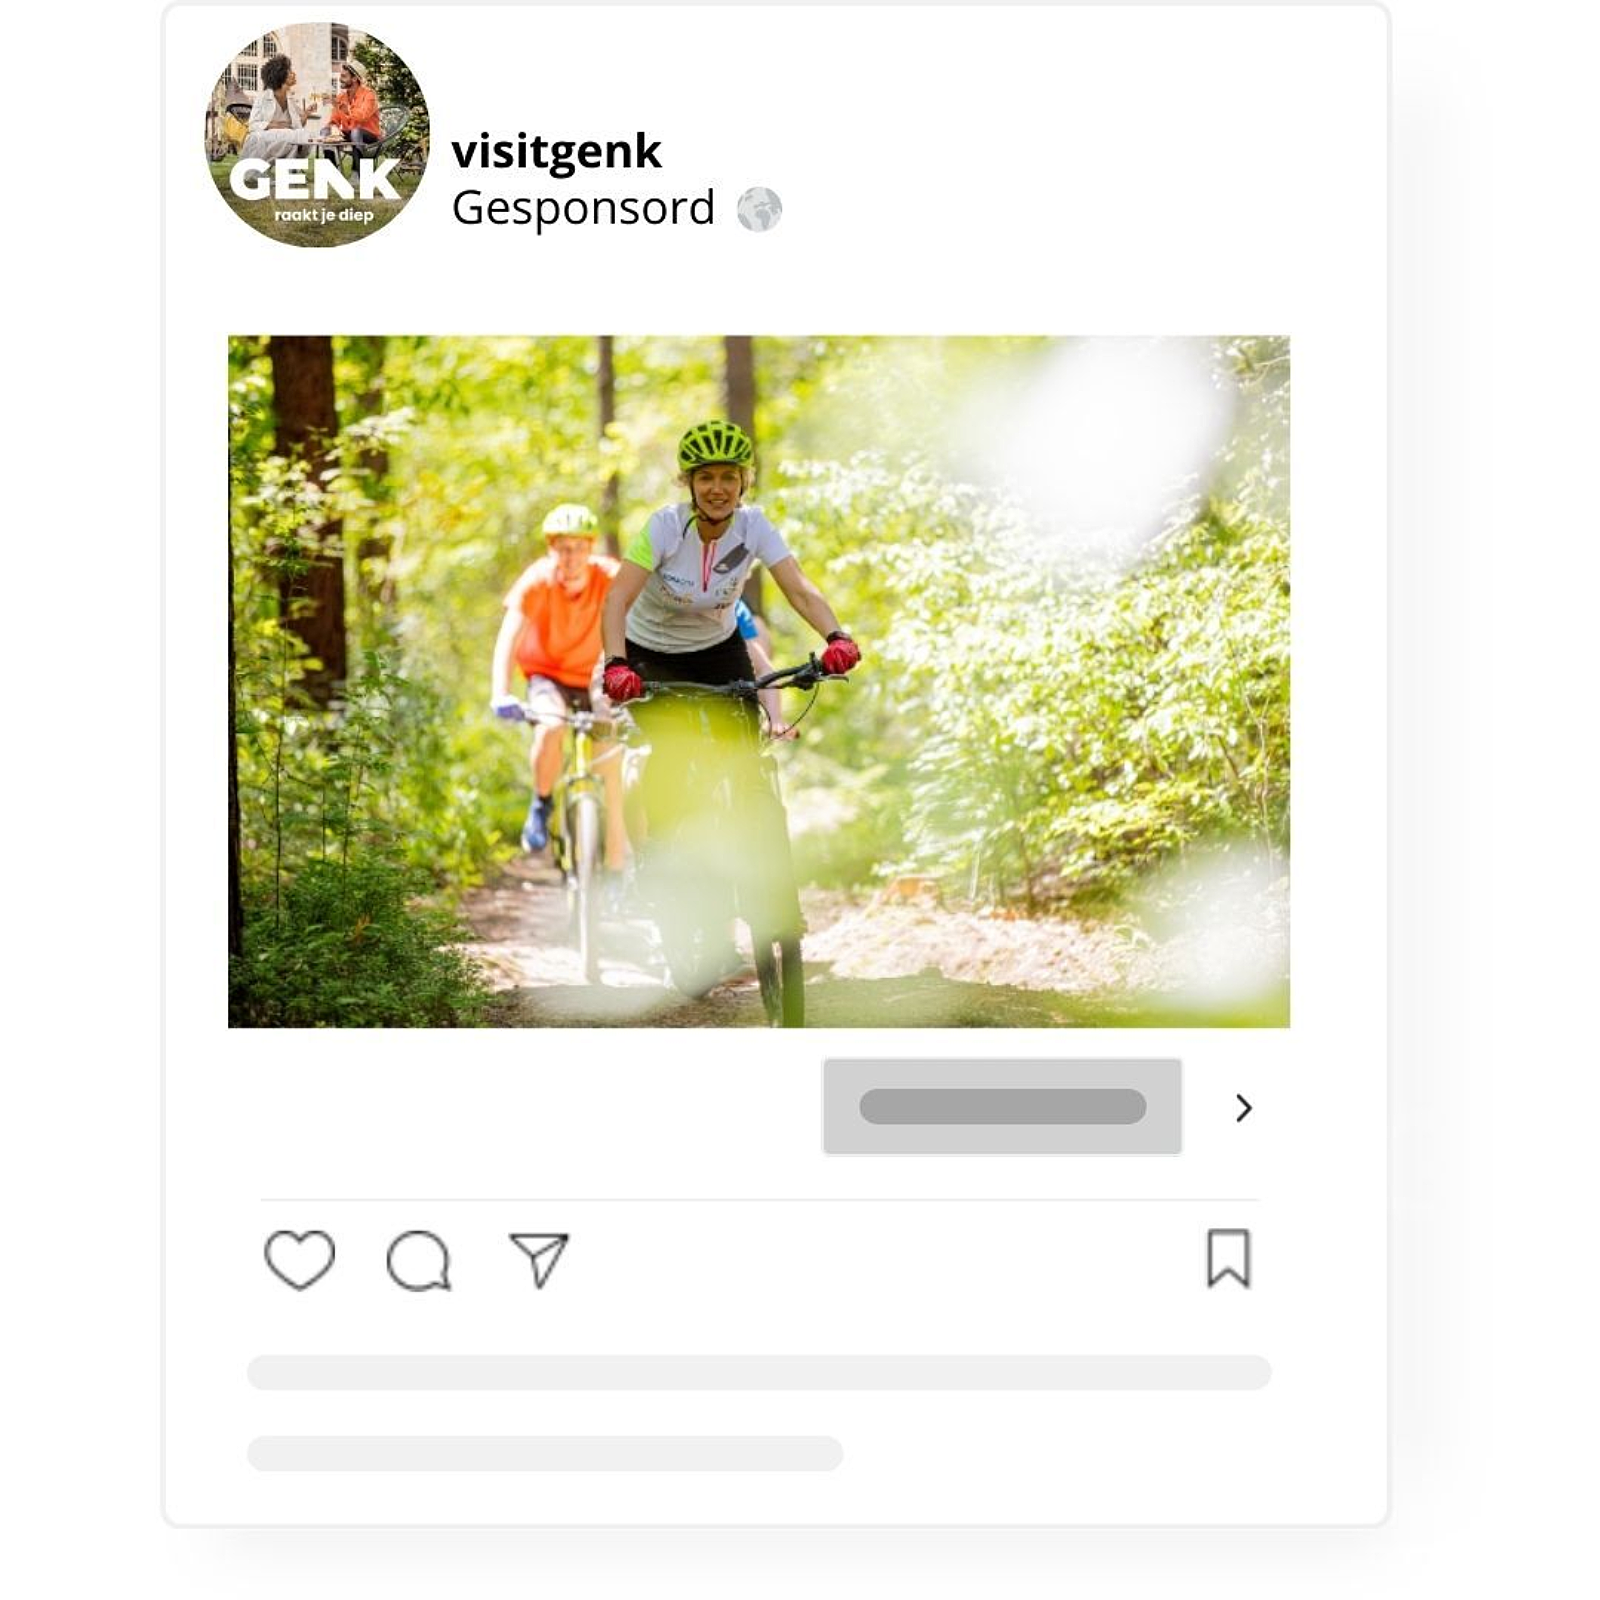 Een Instagram advertentie voor visitgenk met een foto van twee mensen die in een bos fietsen.